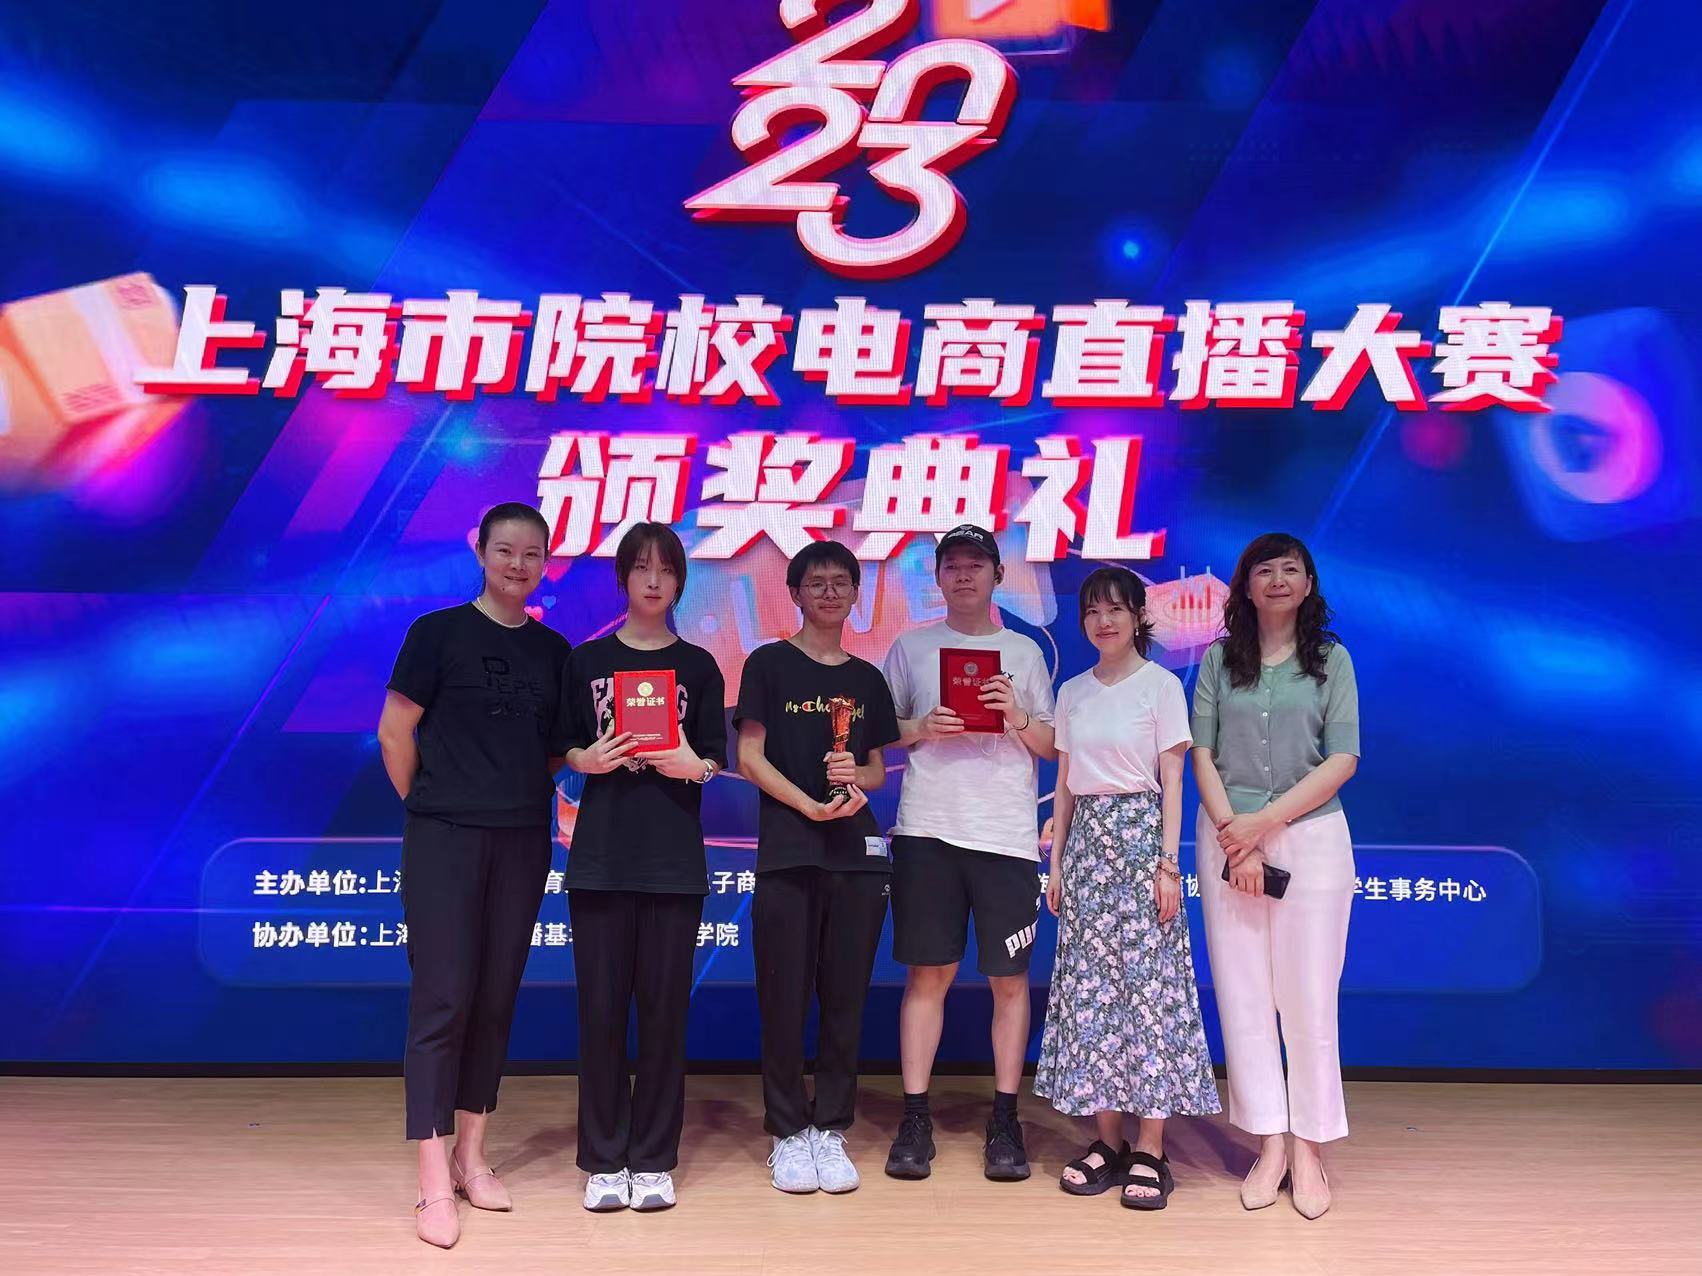 上海市院校电商直播大赛颁奖典礼